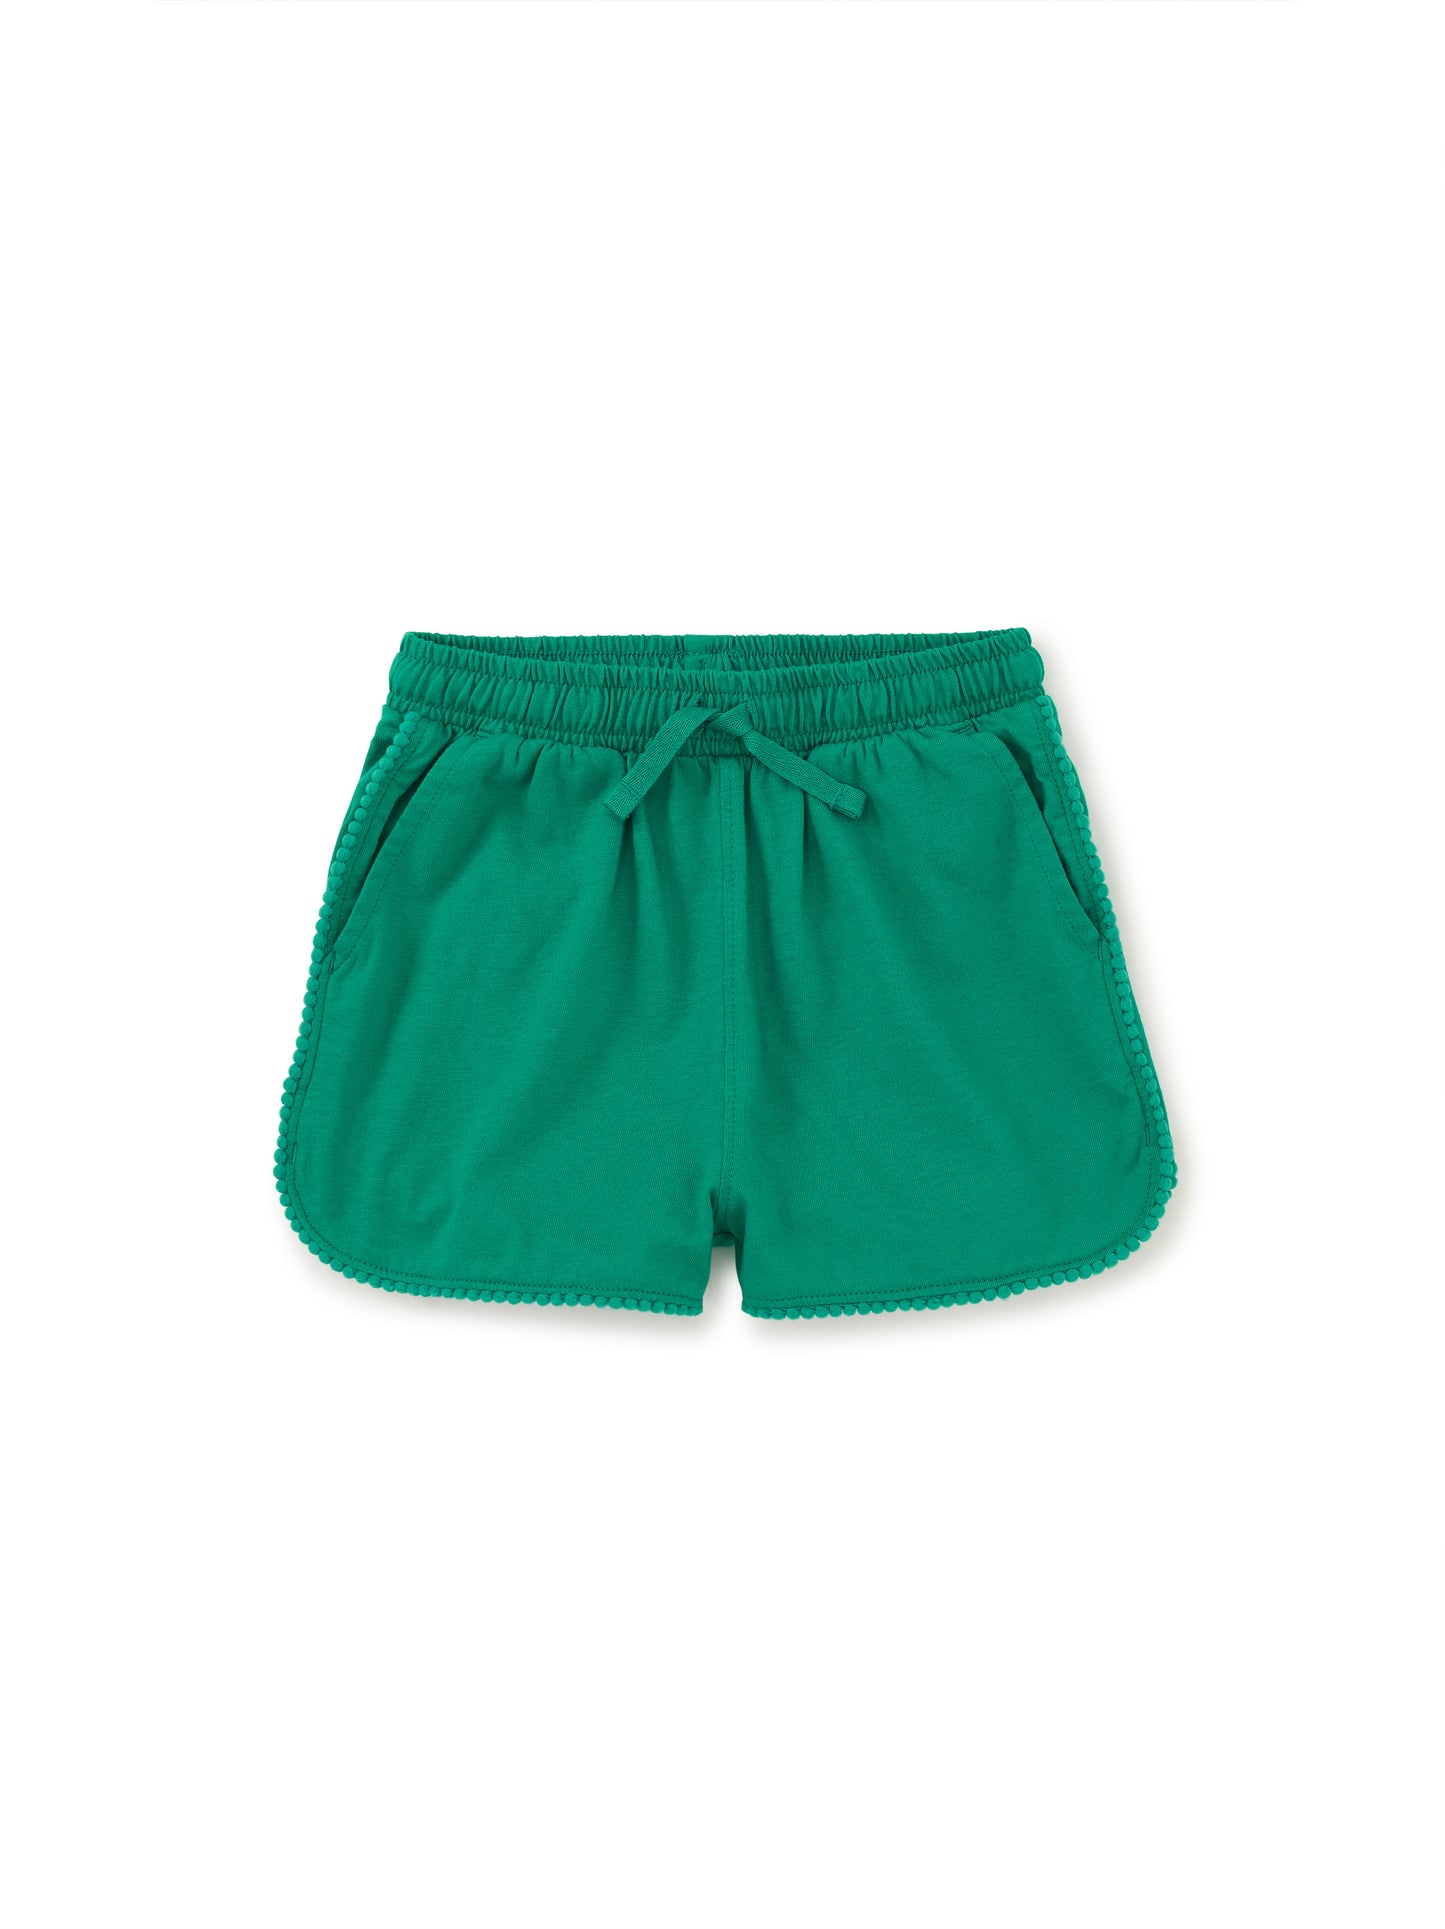 Pom-Pom Gym Shorts / Green